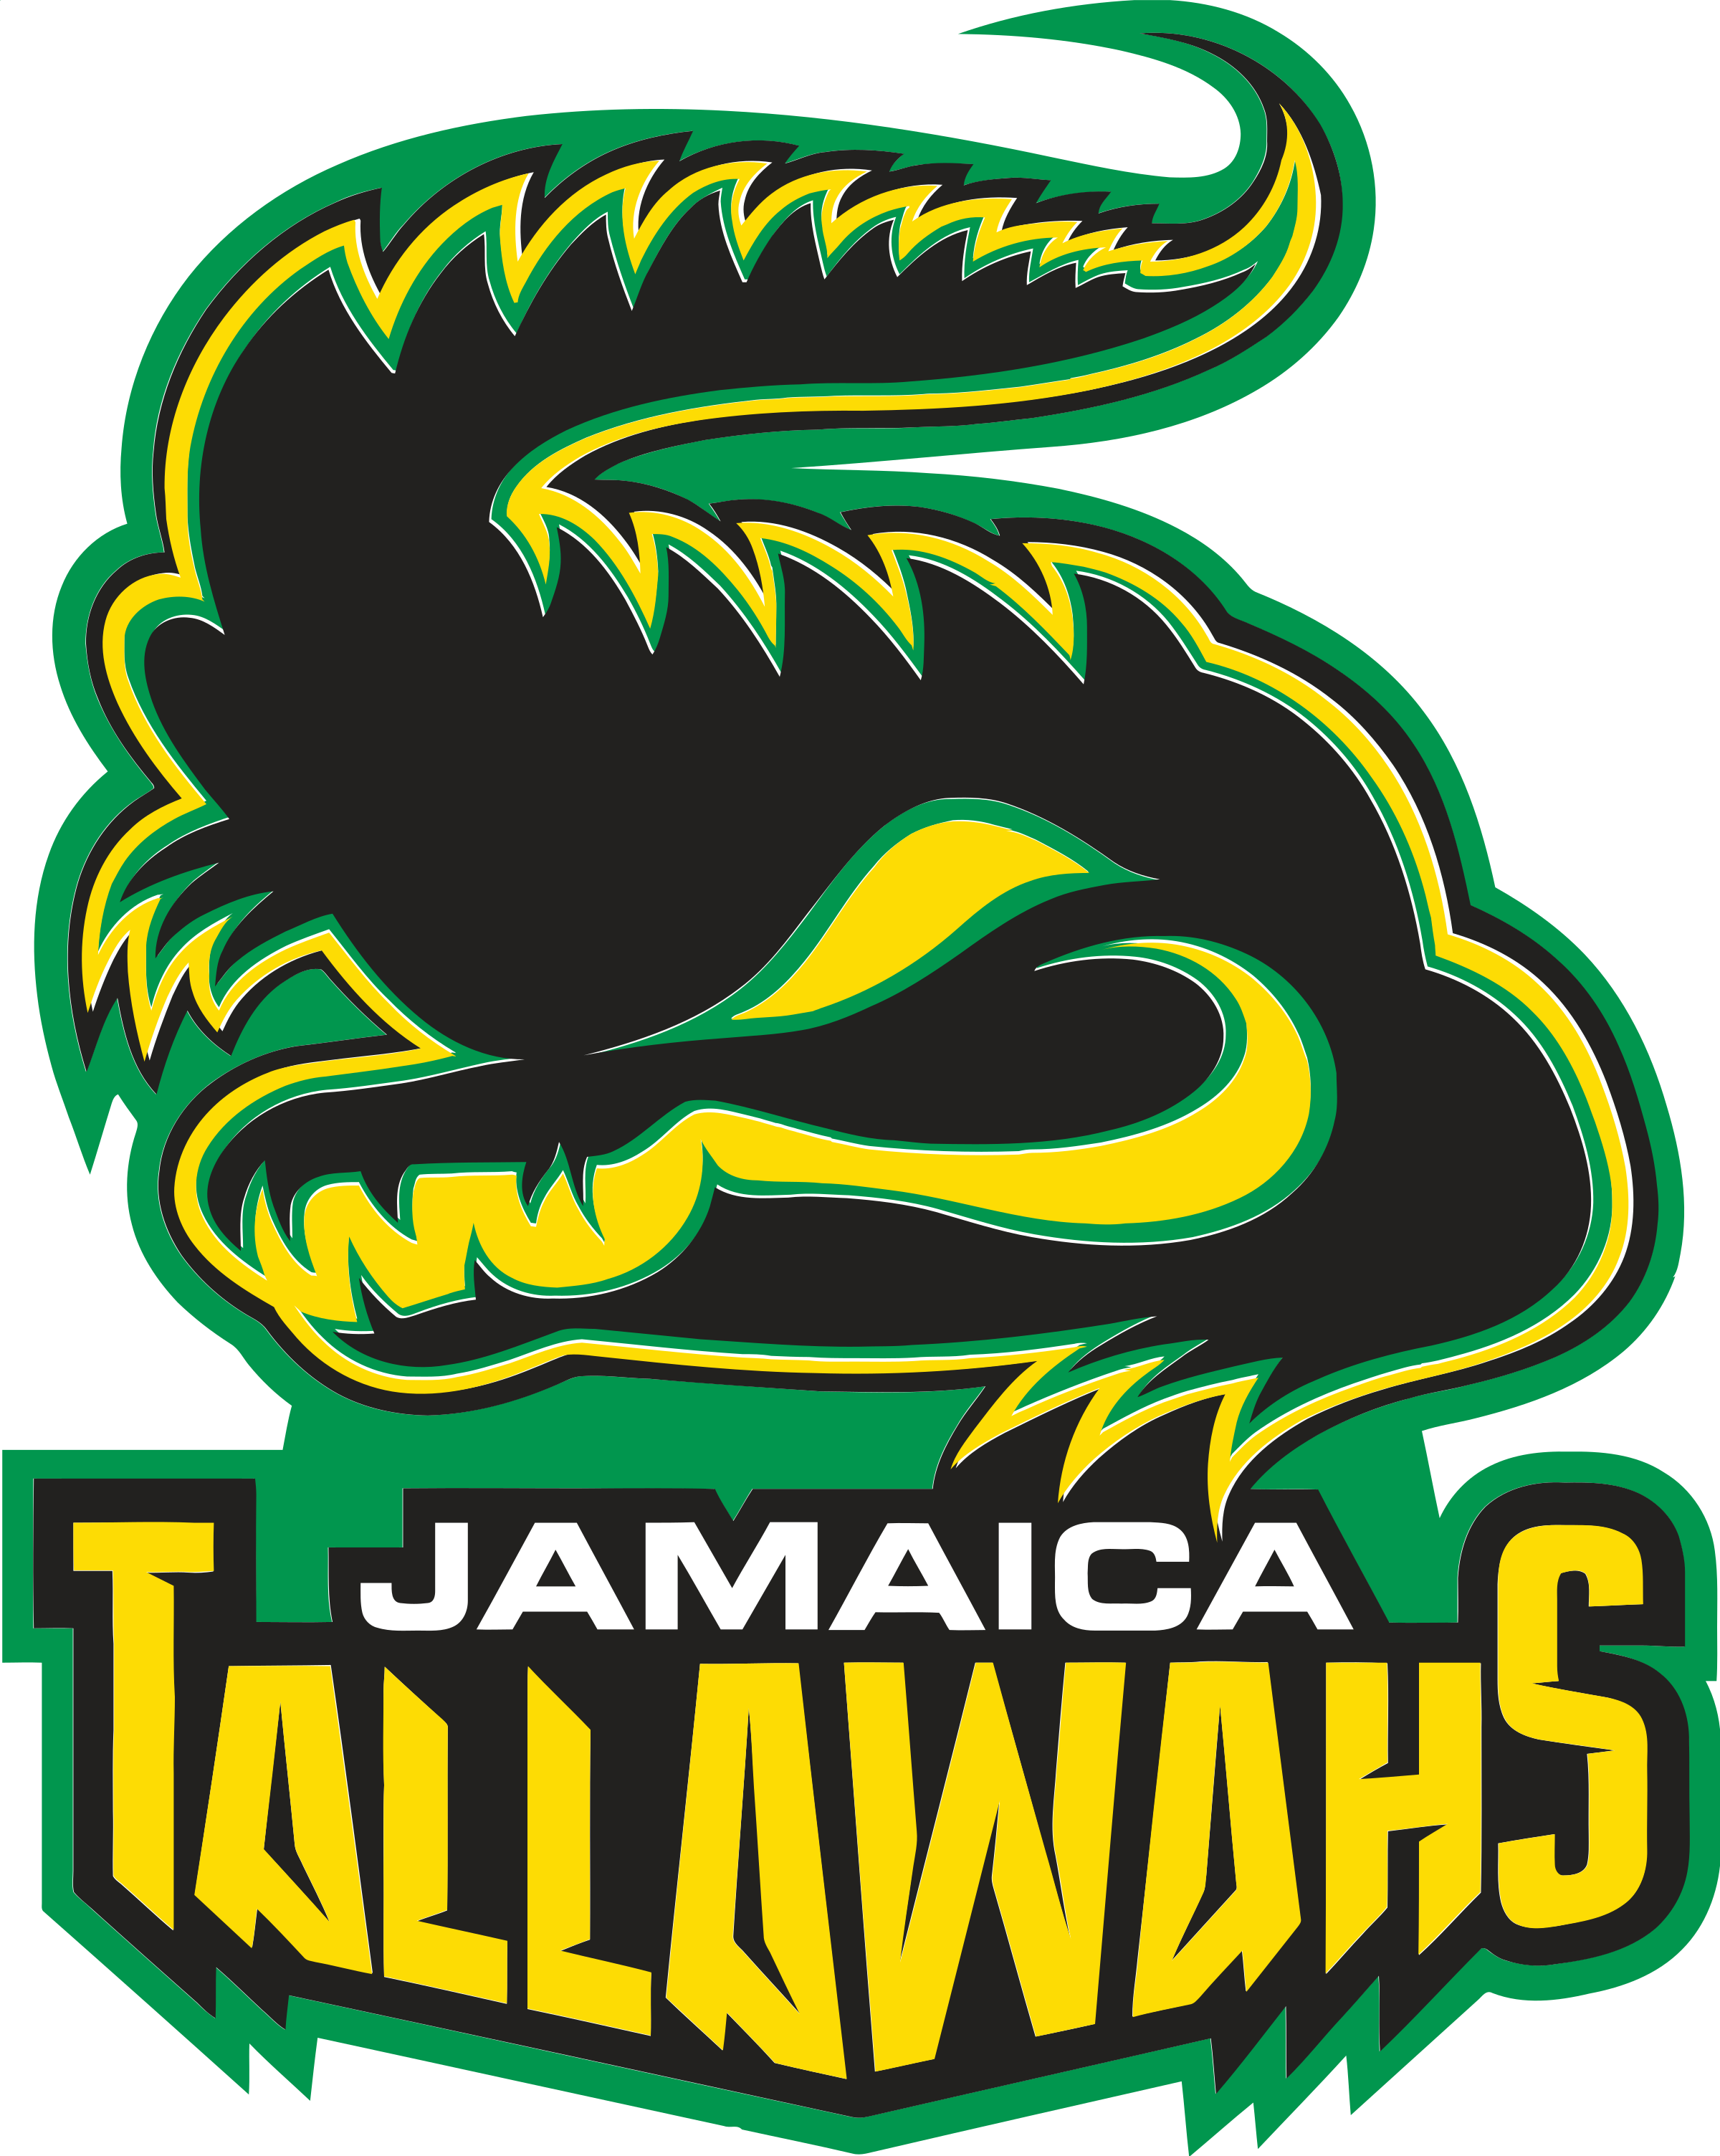 Jamaica Tallahaws Logo Png Transparent - Jamaica Tallawahs Vs Guyana Amazon Warriors (2400x3008), Png Download